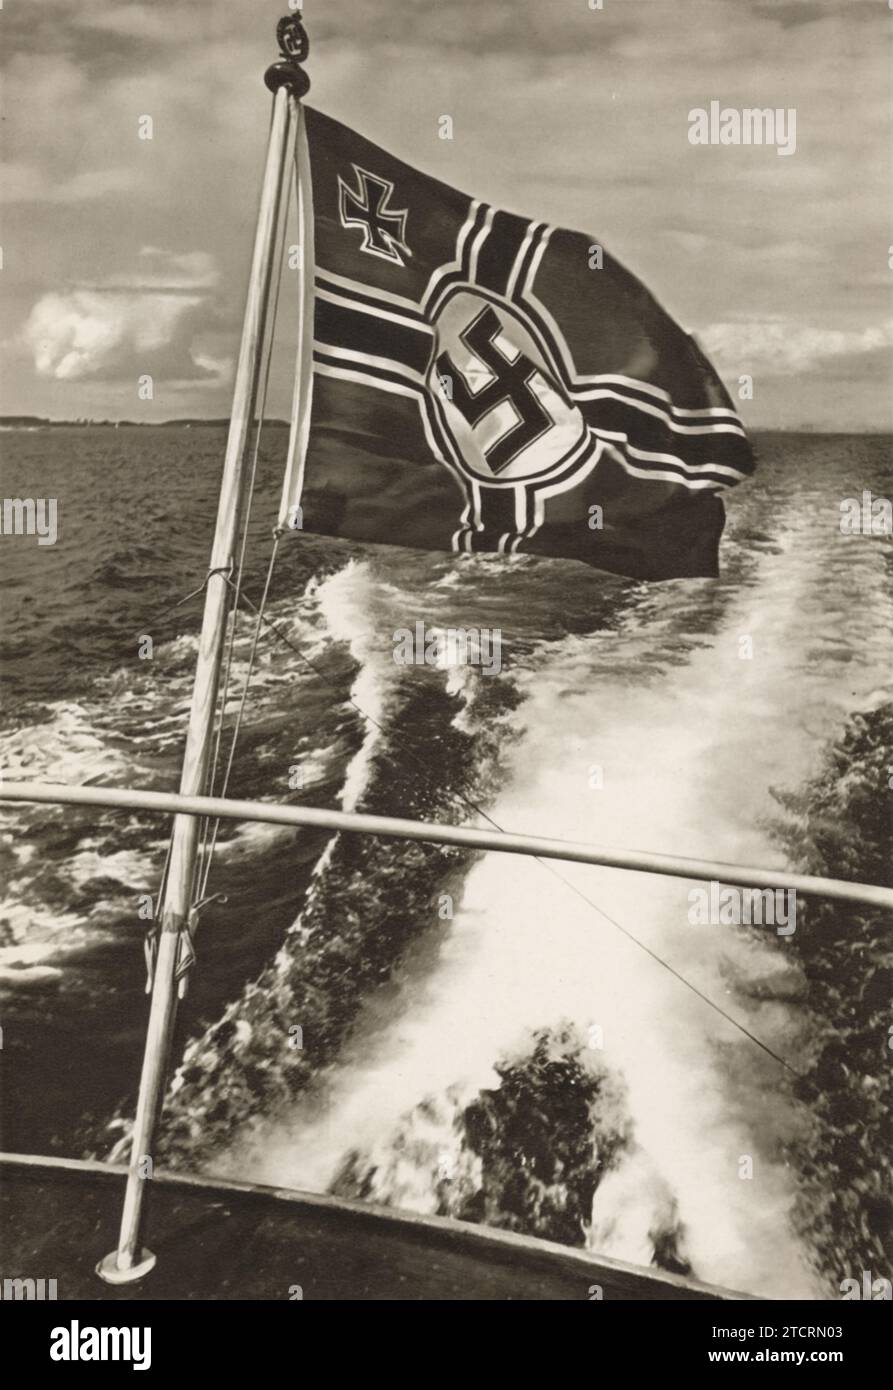 Das Bild zeigt eine deutsche Kriegsflagge, die auf der Rückseite eines Bootes in offenen Gewässern sichtbar ist. Das Vorhandensein der Flagge und das Design des Bootes deuten darauf hin, dass es Teil der deutschen Marine, der Kriegsmarine, ist, die während des Zweiten Weltkriegs aktiv war Die Kriegsmarine spielte eine wichtige Rolle in der deutschen Militärstrategie, da ihre Flotte in verschiedenen Marineschuhen operierte. Die Flagge, ein Symbol für die militärische Präsenz der Nation, wurde typischerweise auf solchen Schiffen geflogen, um ihre Loyalität und operative Identität zu signalisieren. Stockfoto